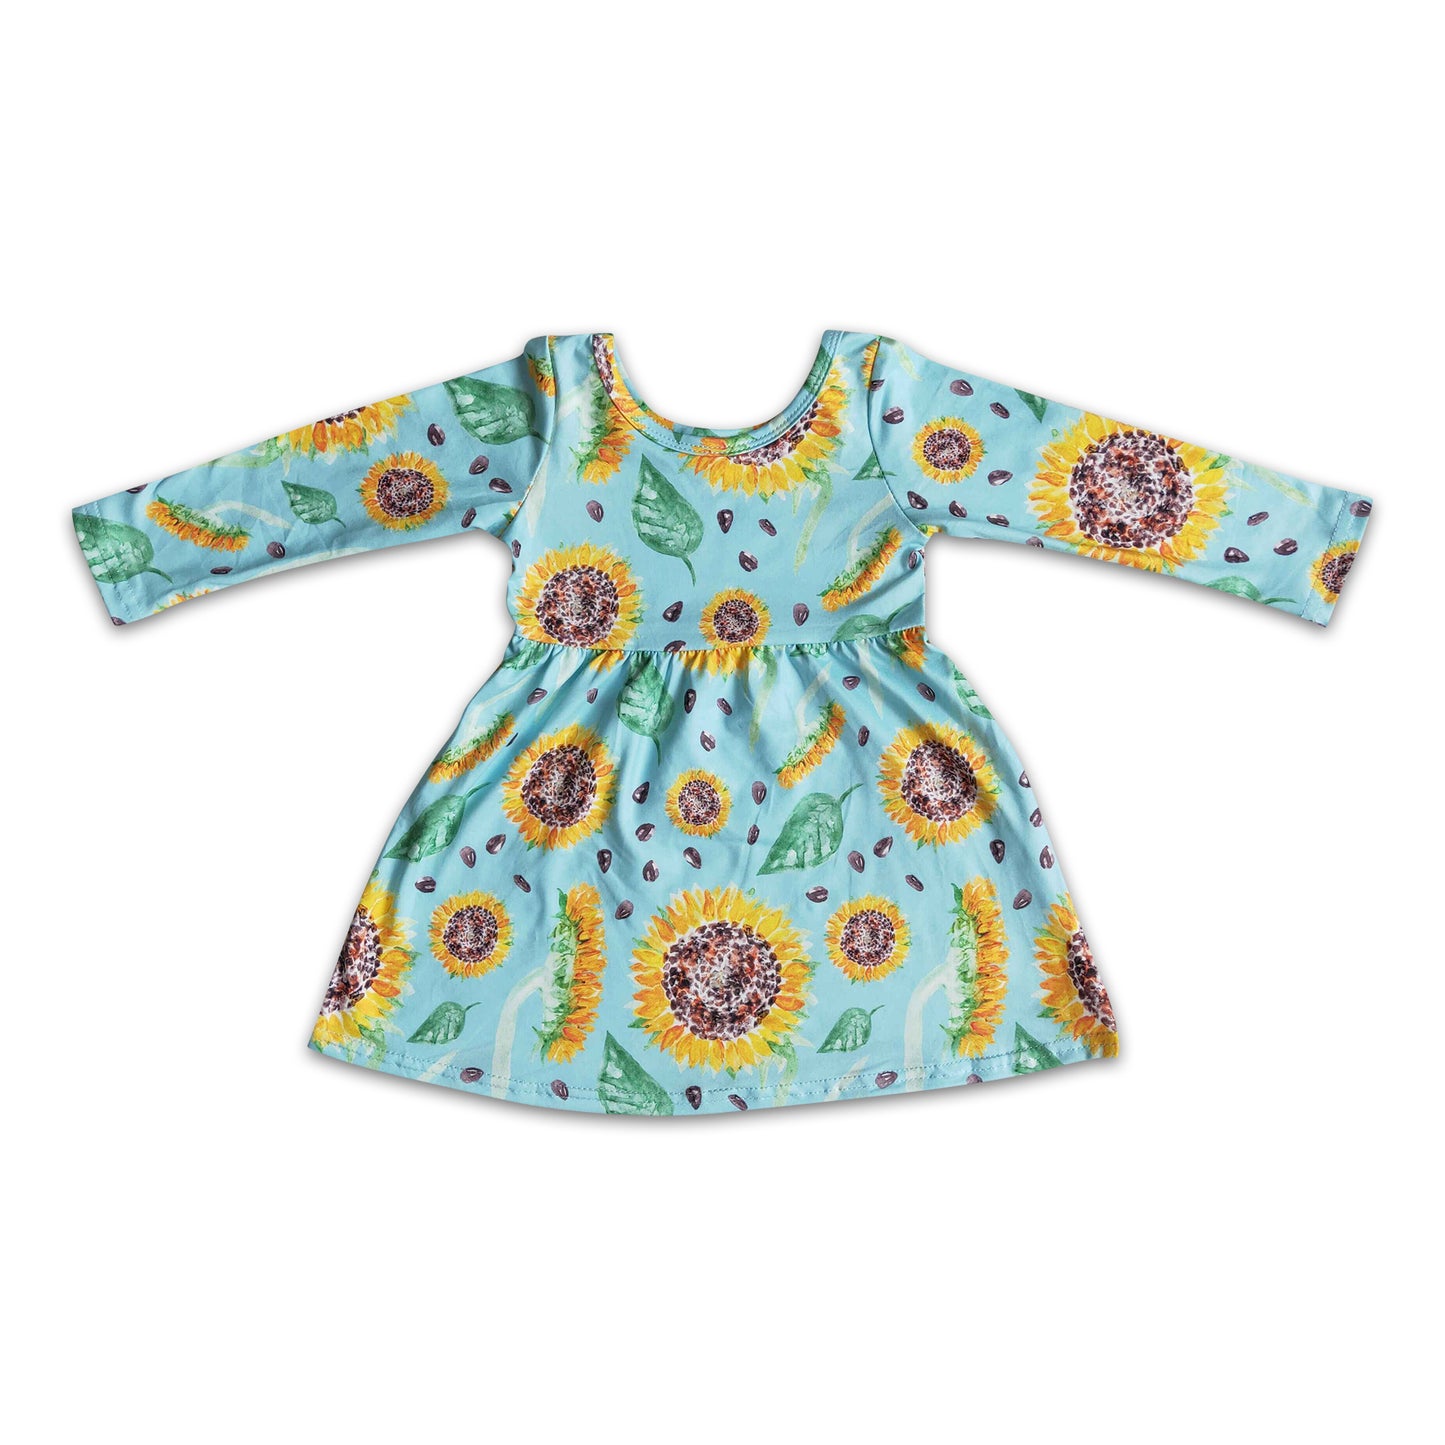 Sunflower long sleeve baby girls dresses